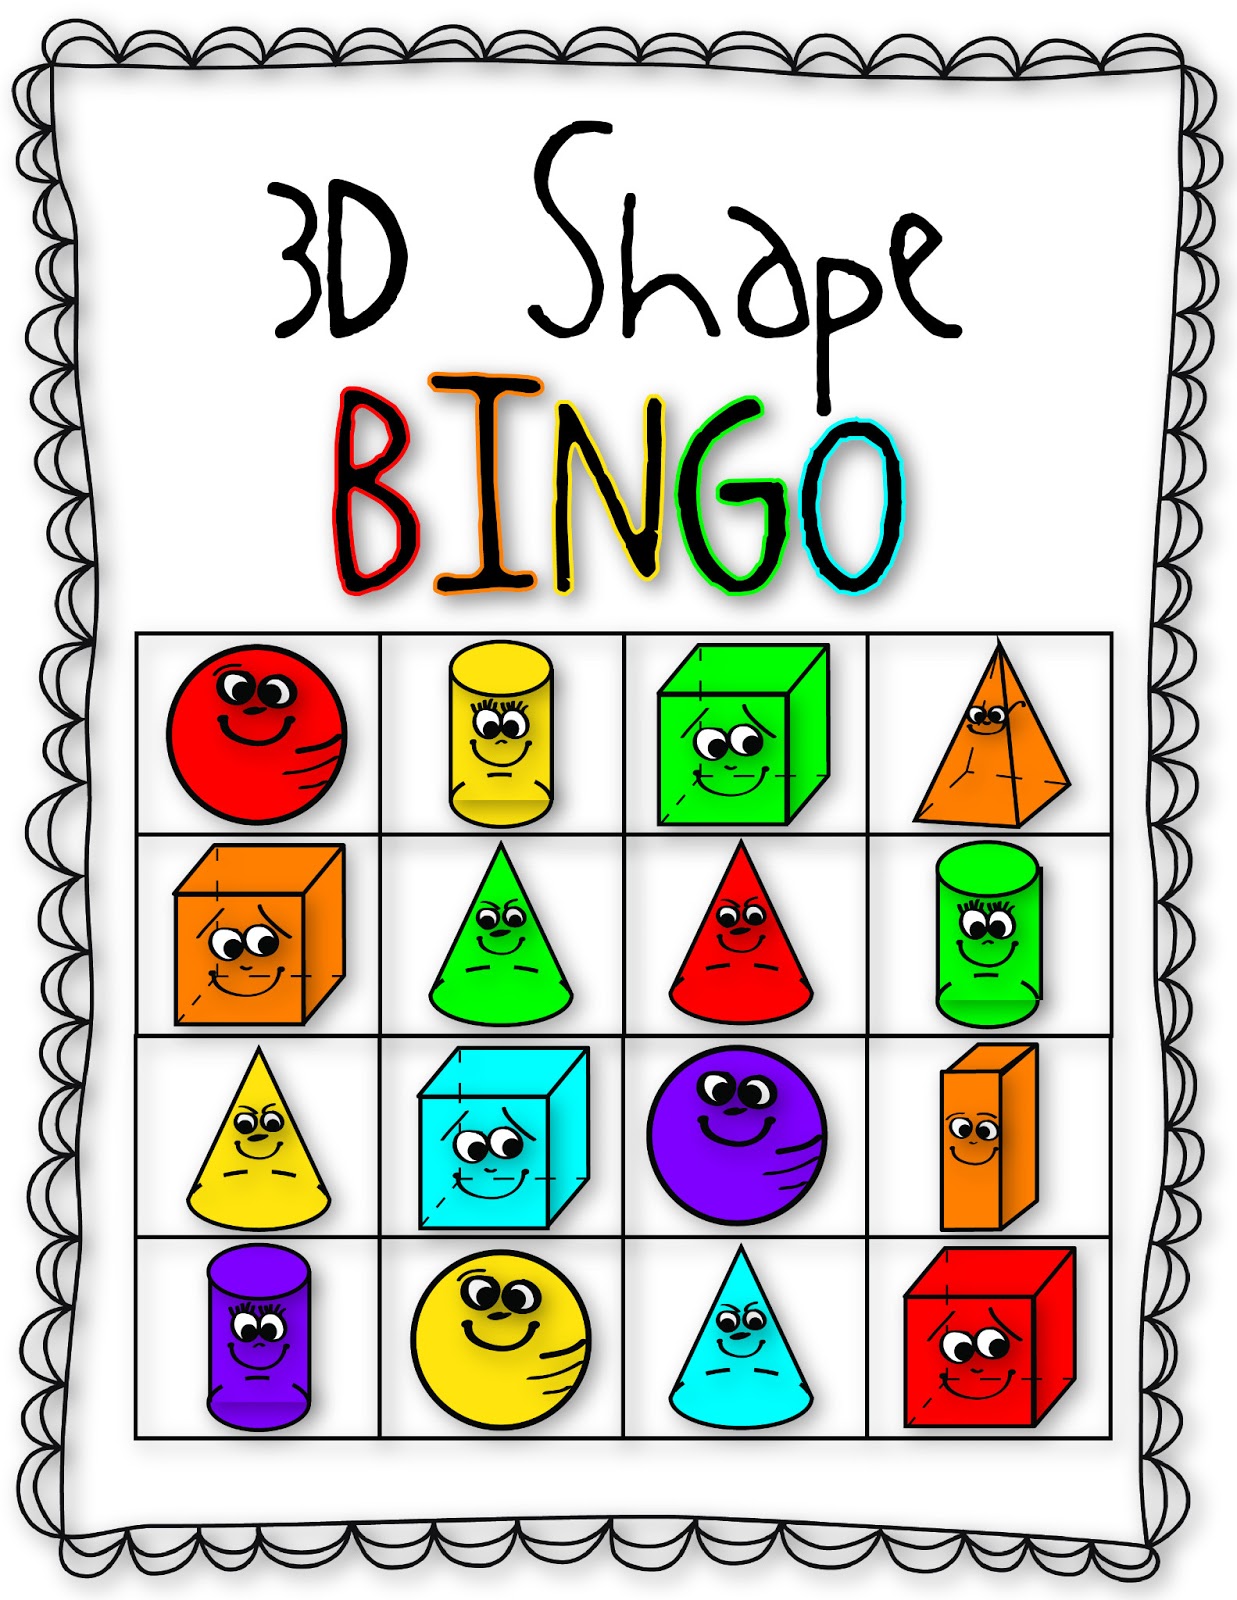 Bingo clip art 3 - Cliparting.com